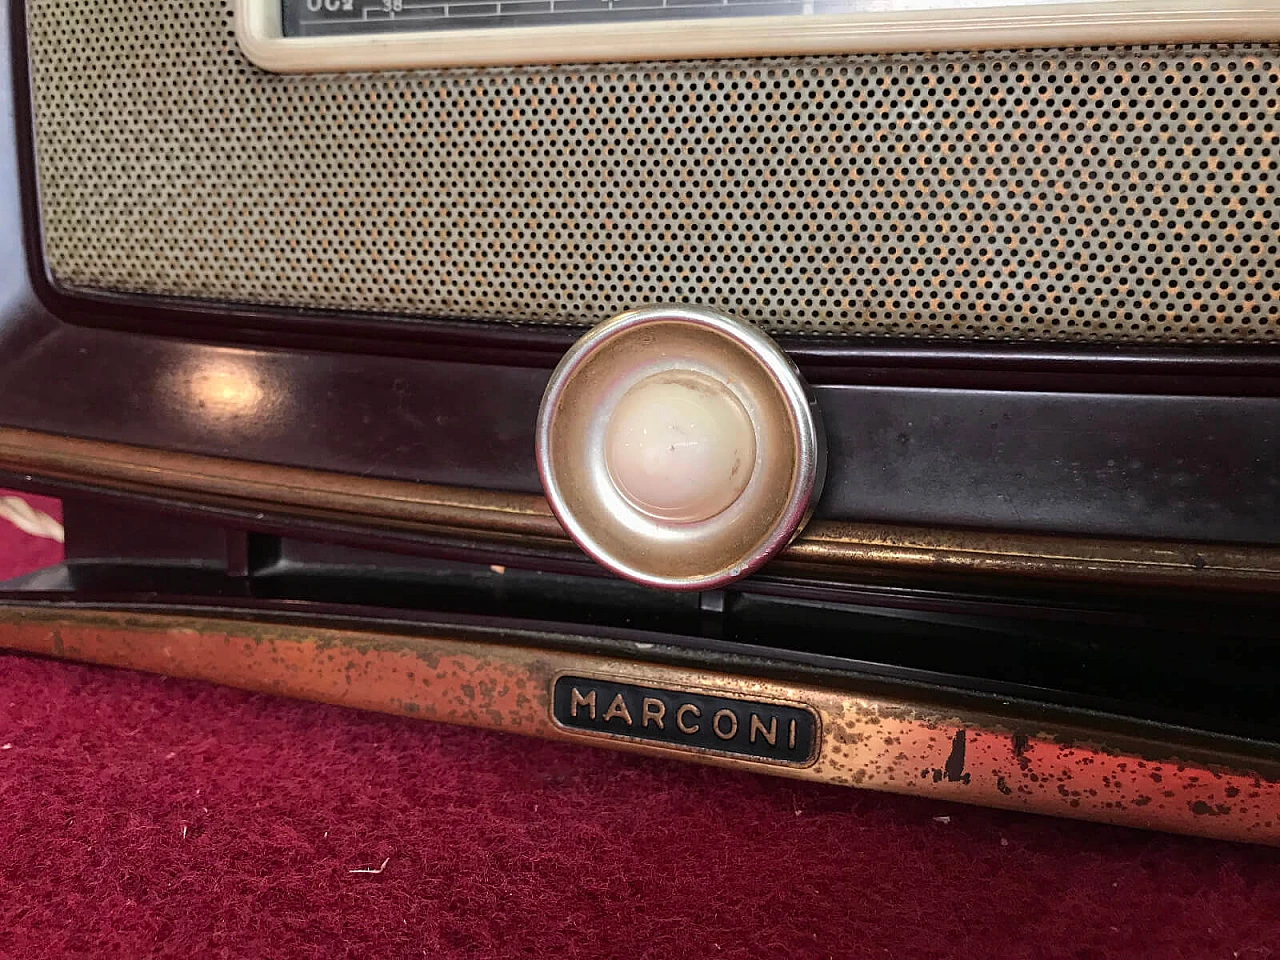 Radio italiana "Marconi 1531" della casa La voce del Padrone 5